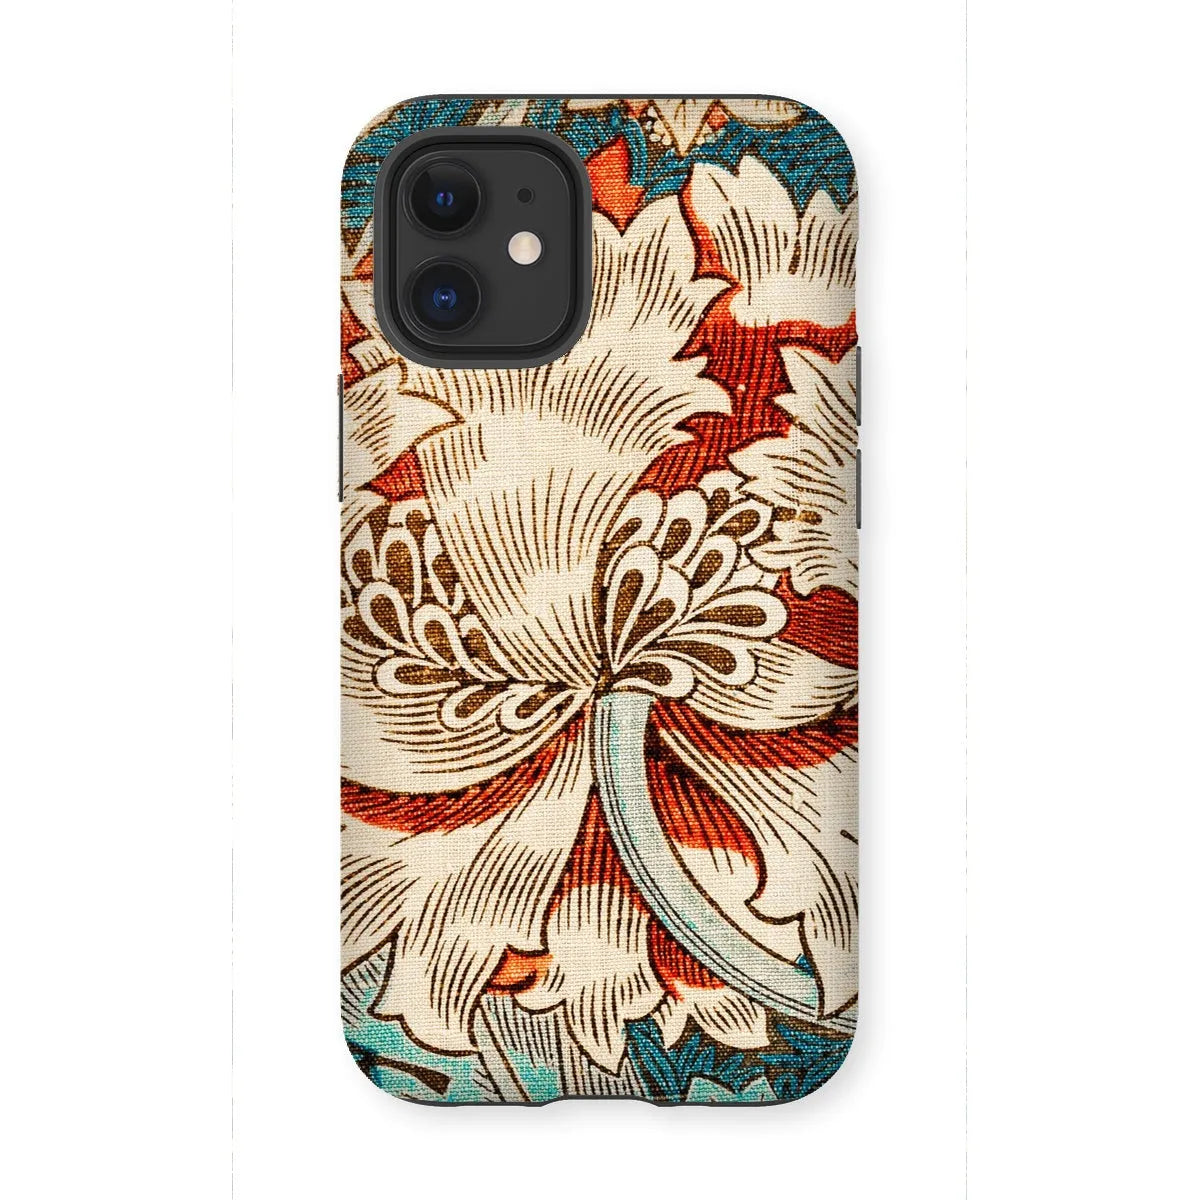 Honeysuckle Too By William Morris Phone Case - Iphone 12 Mini / Matte - Mobile Phone Cases - Aesthetic Art